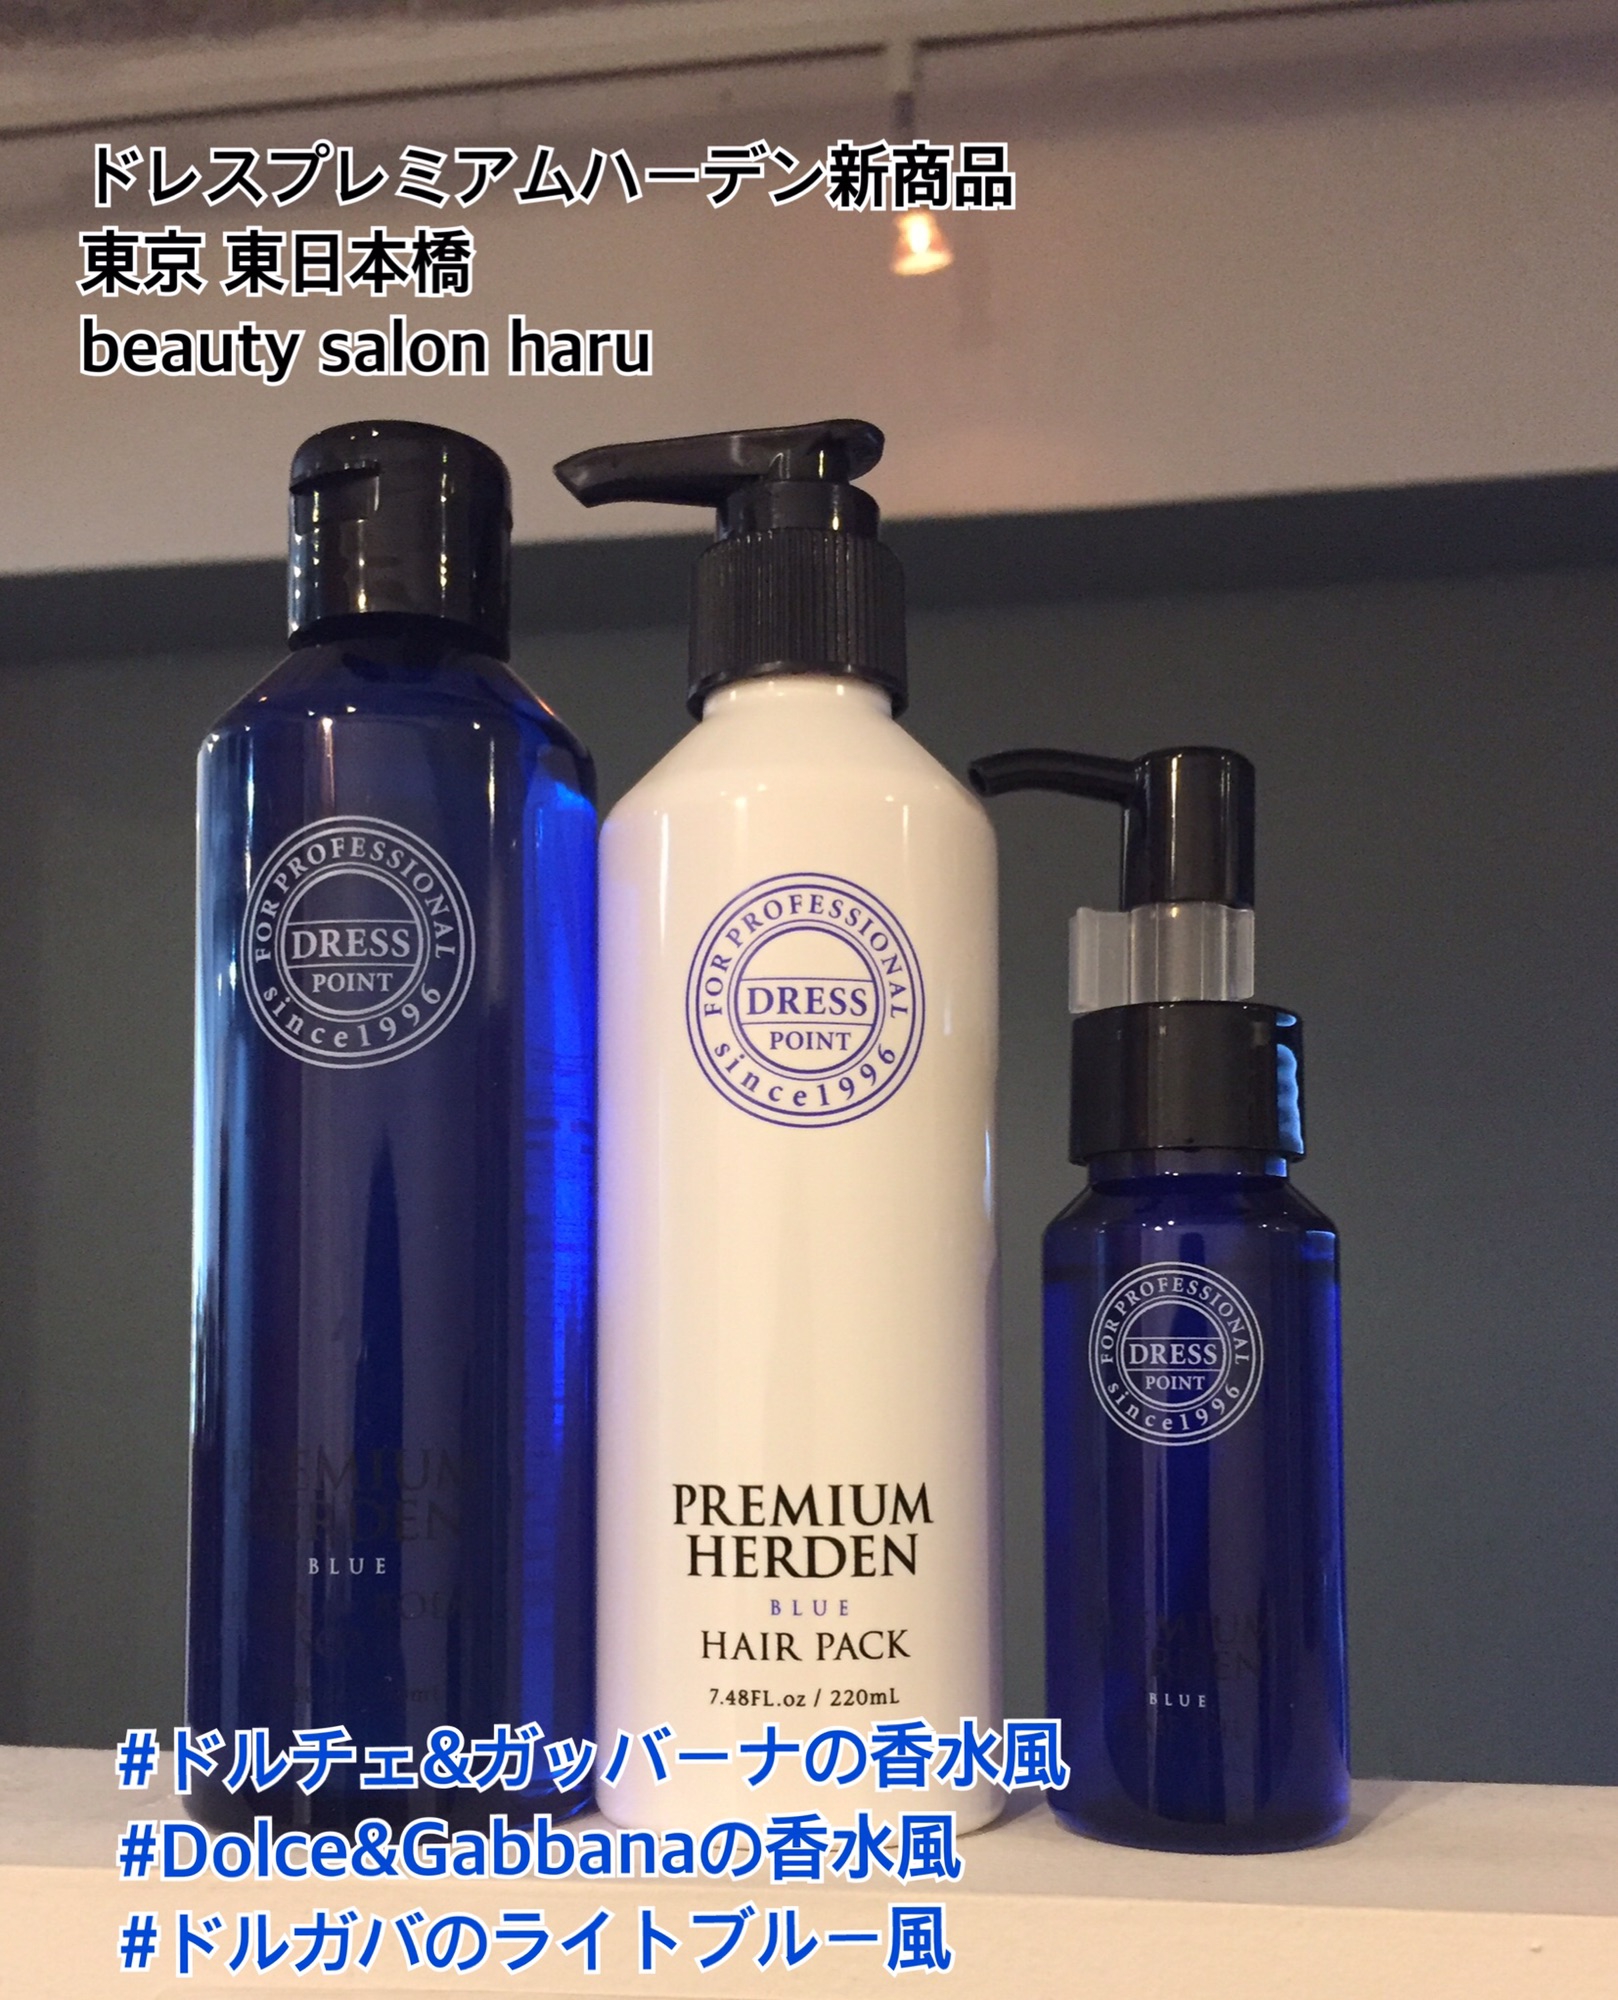 ドレスプレミアムハーデン BLUE 新発売 | beauty salon haru 永石 